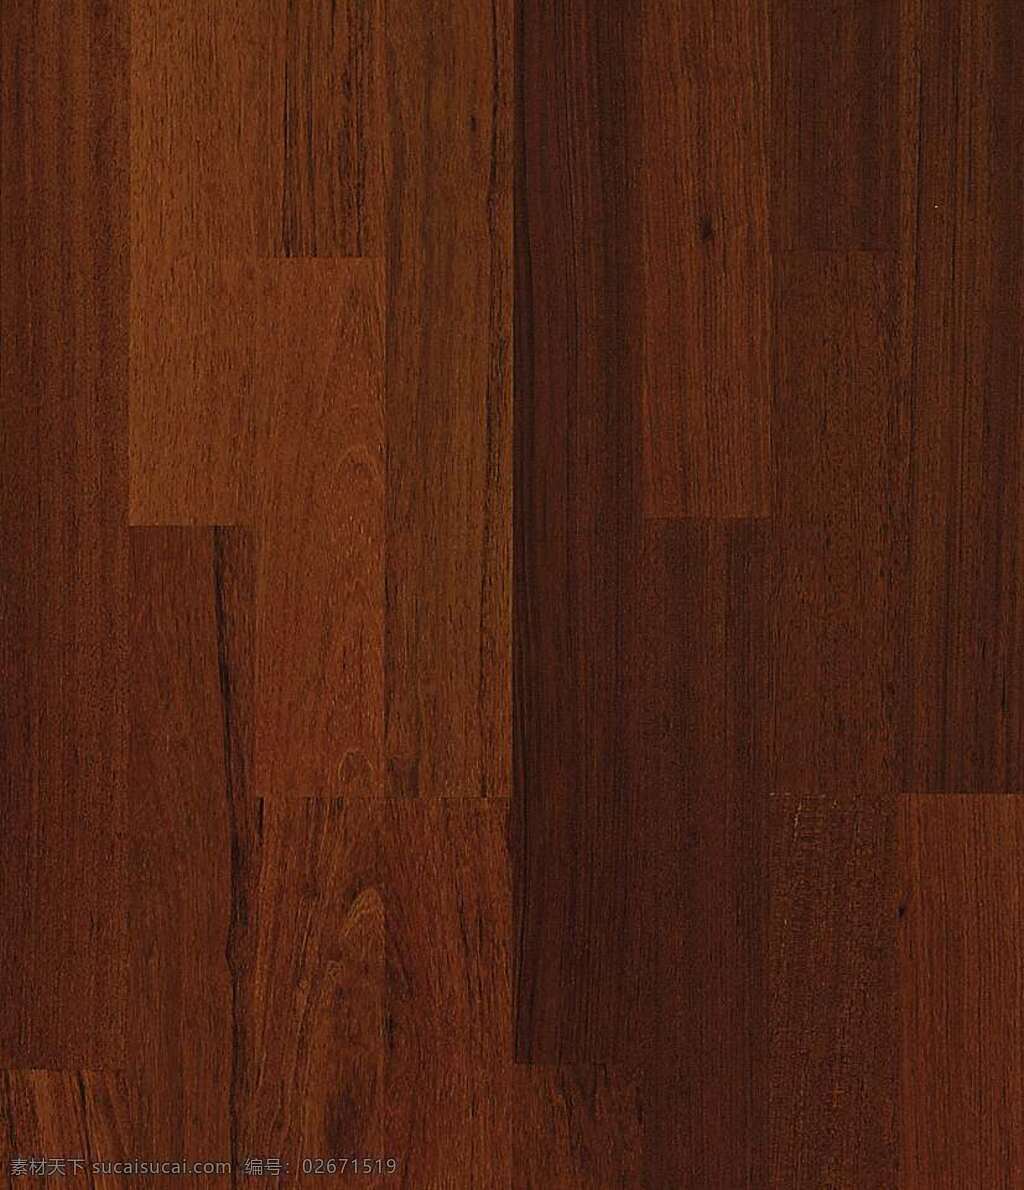 木地板 贴图 地板 木材贴图 木地板贴图 木地板效果图 室内设计 木地板材质 装饰素材 室内装饰用图